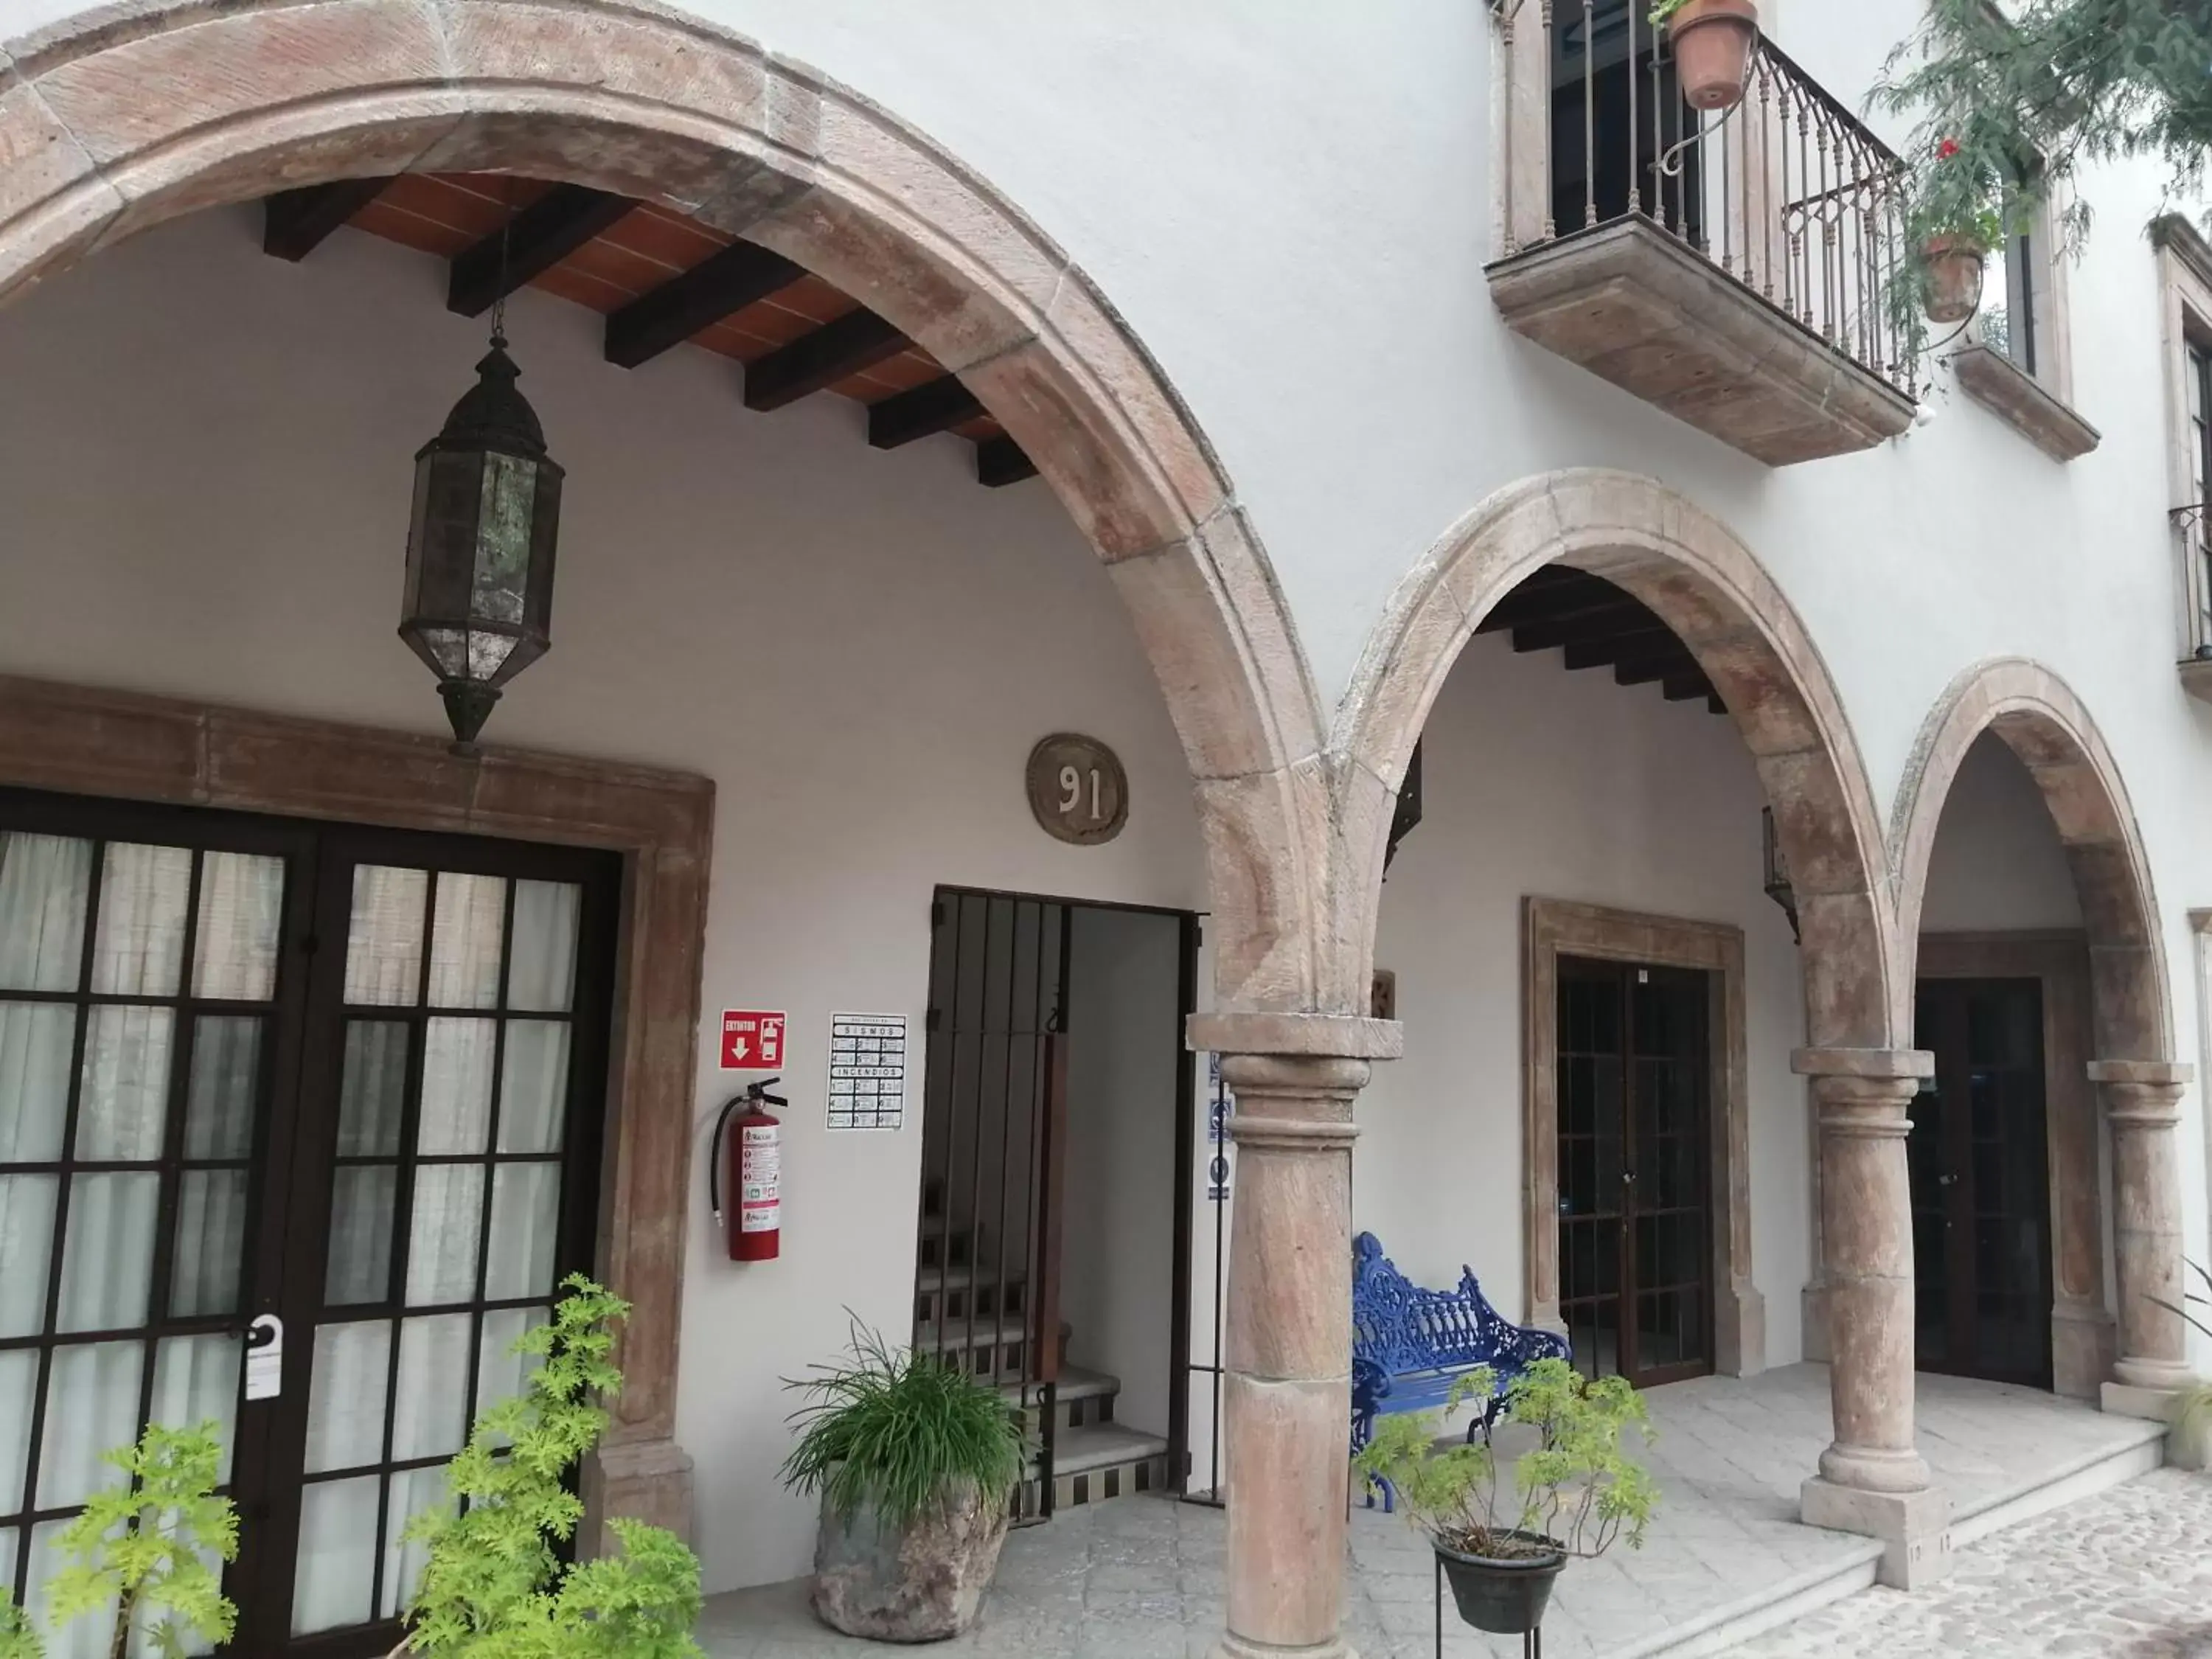 Facade/entrance in Casa Goyri San Miguel de Allende